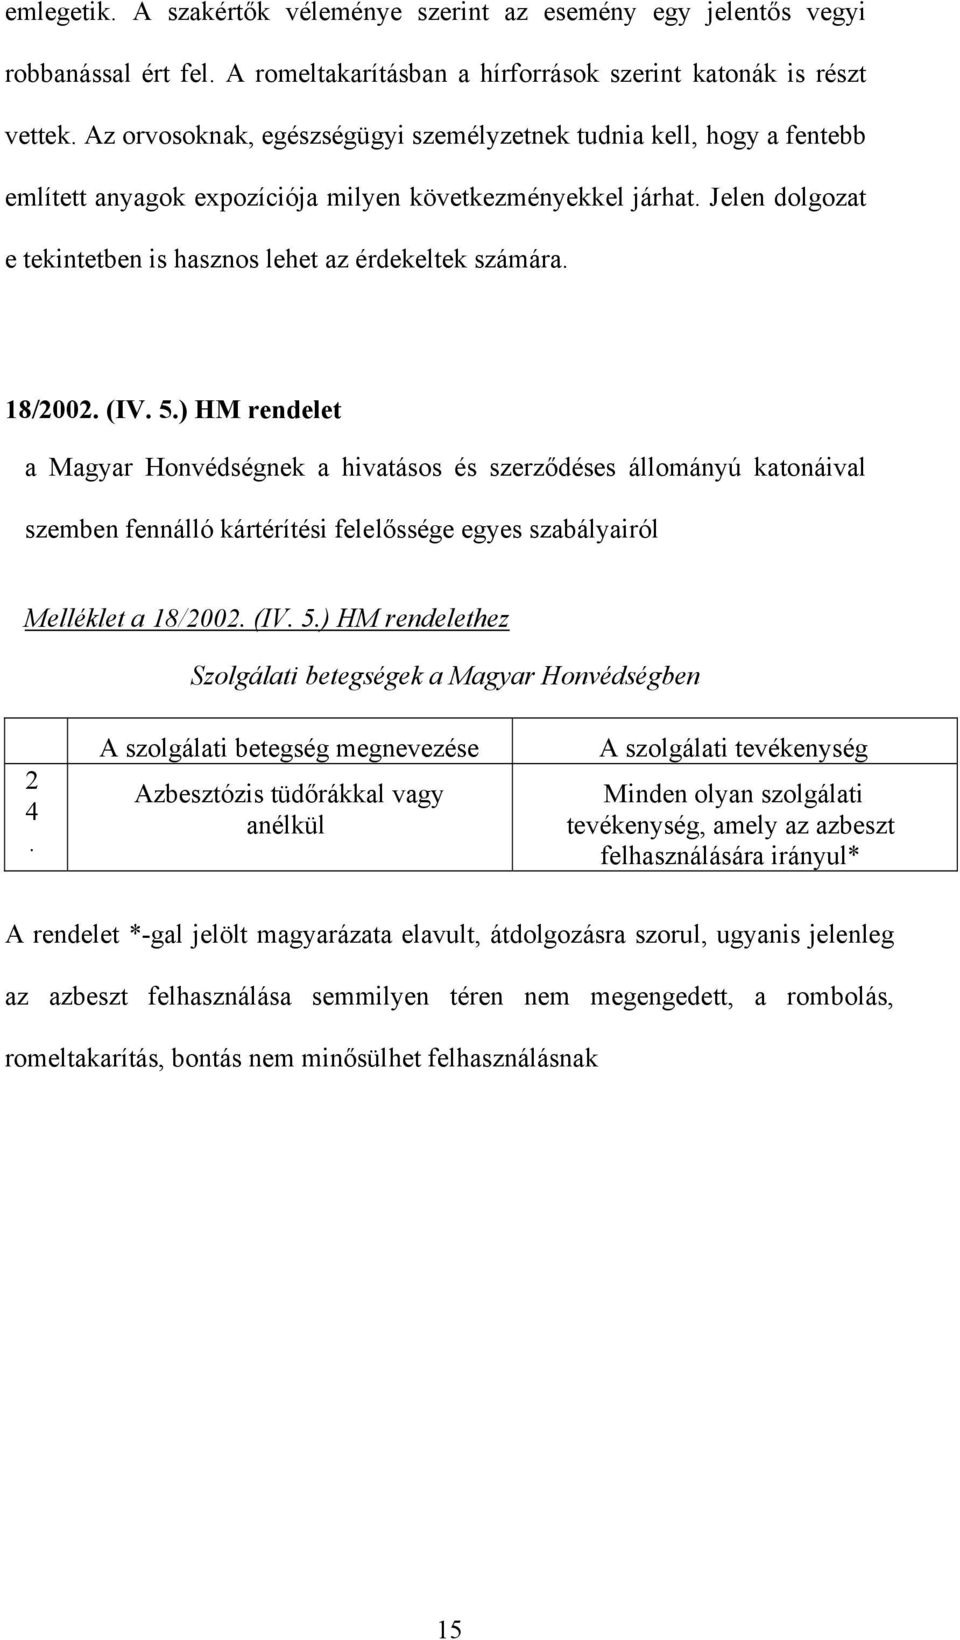 18/2002. (IV. 5.) HM rendelet a Magyar Honvédségnek a hivatásos és szerződéses állományú katonáival szemben fennálló kártérítési felelőssége egyes szabályairól Melléklet a 18/2002. (IV. 5.) HM rendelethez Szolgálati betegségek a Magyar Honvédségben 2 4.